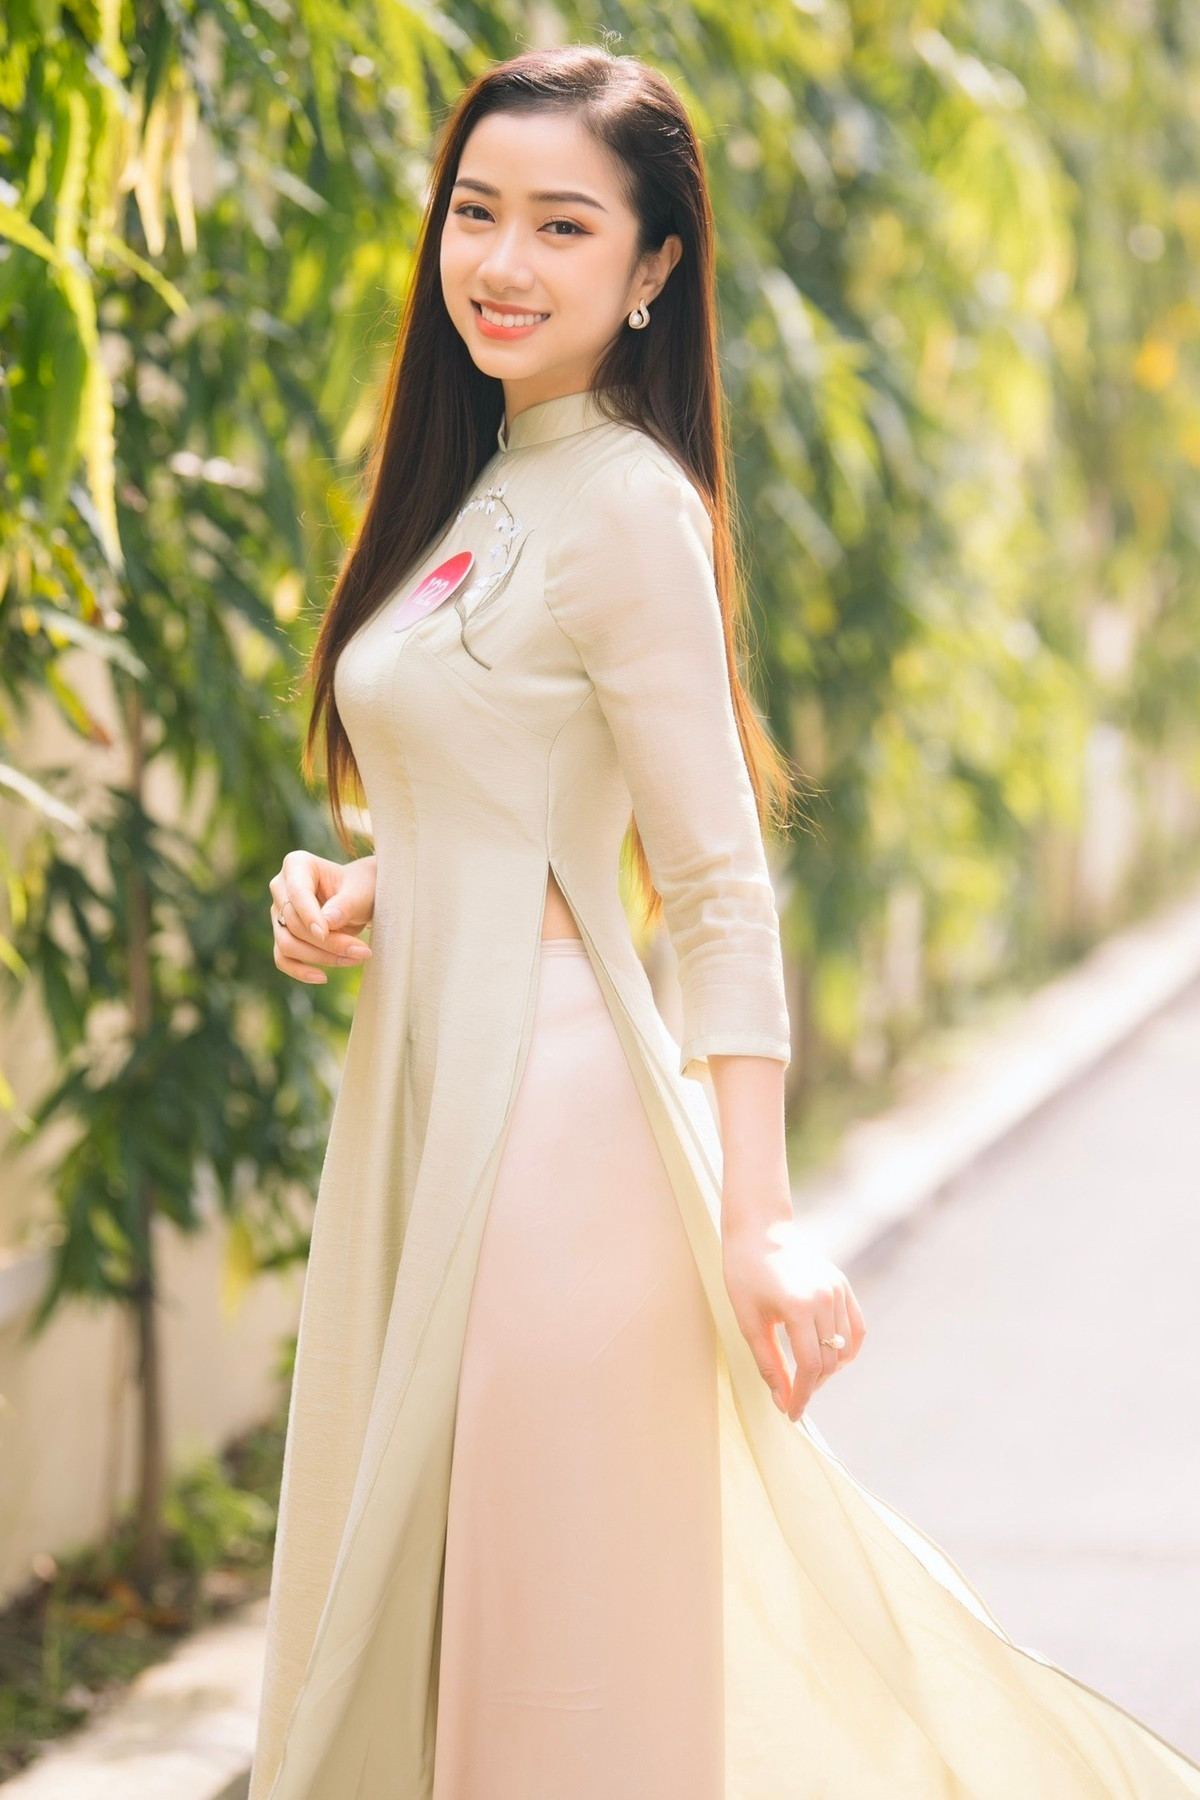 Nhan sắc mỹ nhân duy nhất có IELTS 8.0 vào chung kết Hoa hậu Việt Nam 2022 - 2